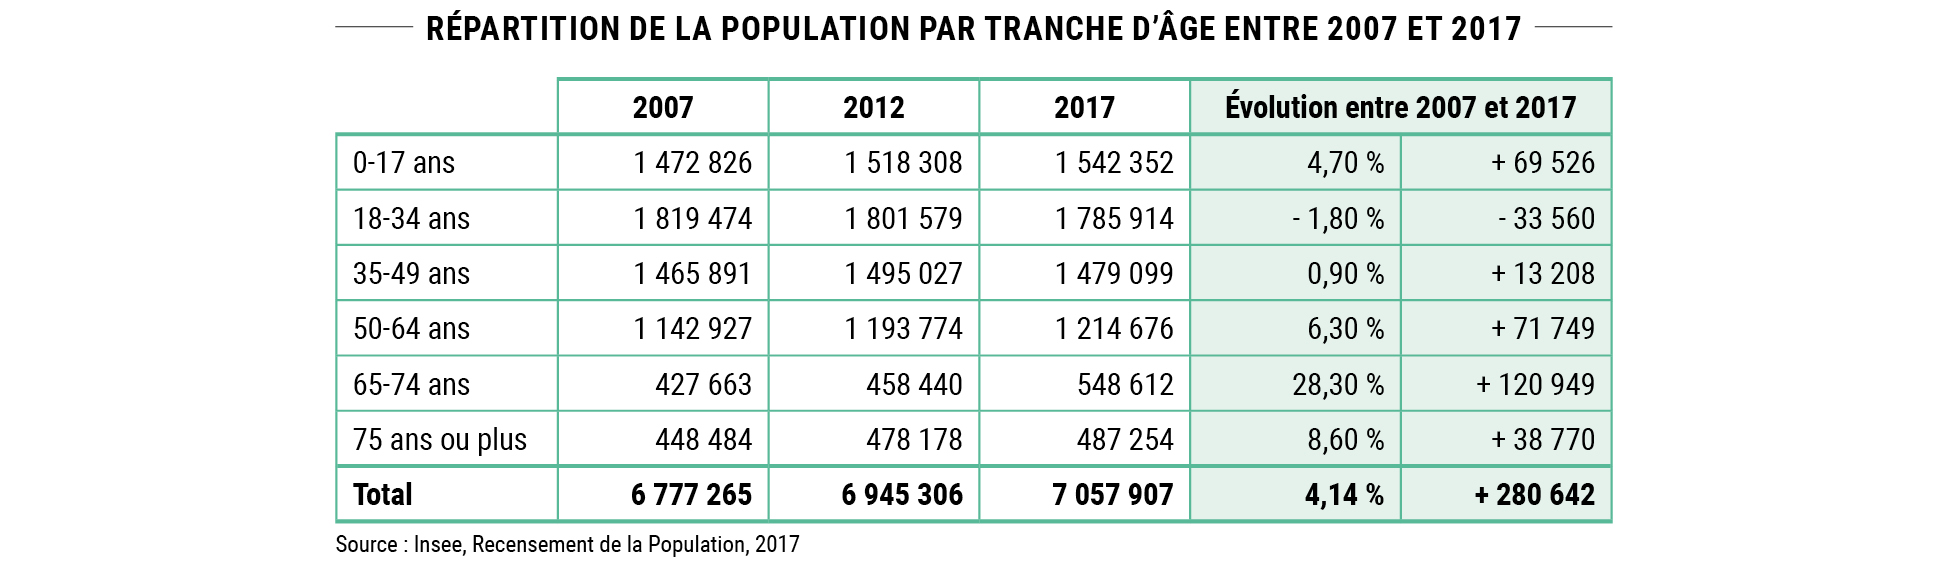 Répartition de la population par tranche d’âge entre 2007 et 2017 © Apur